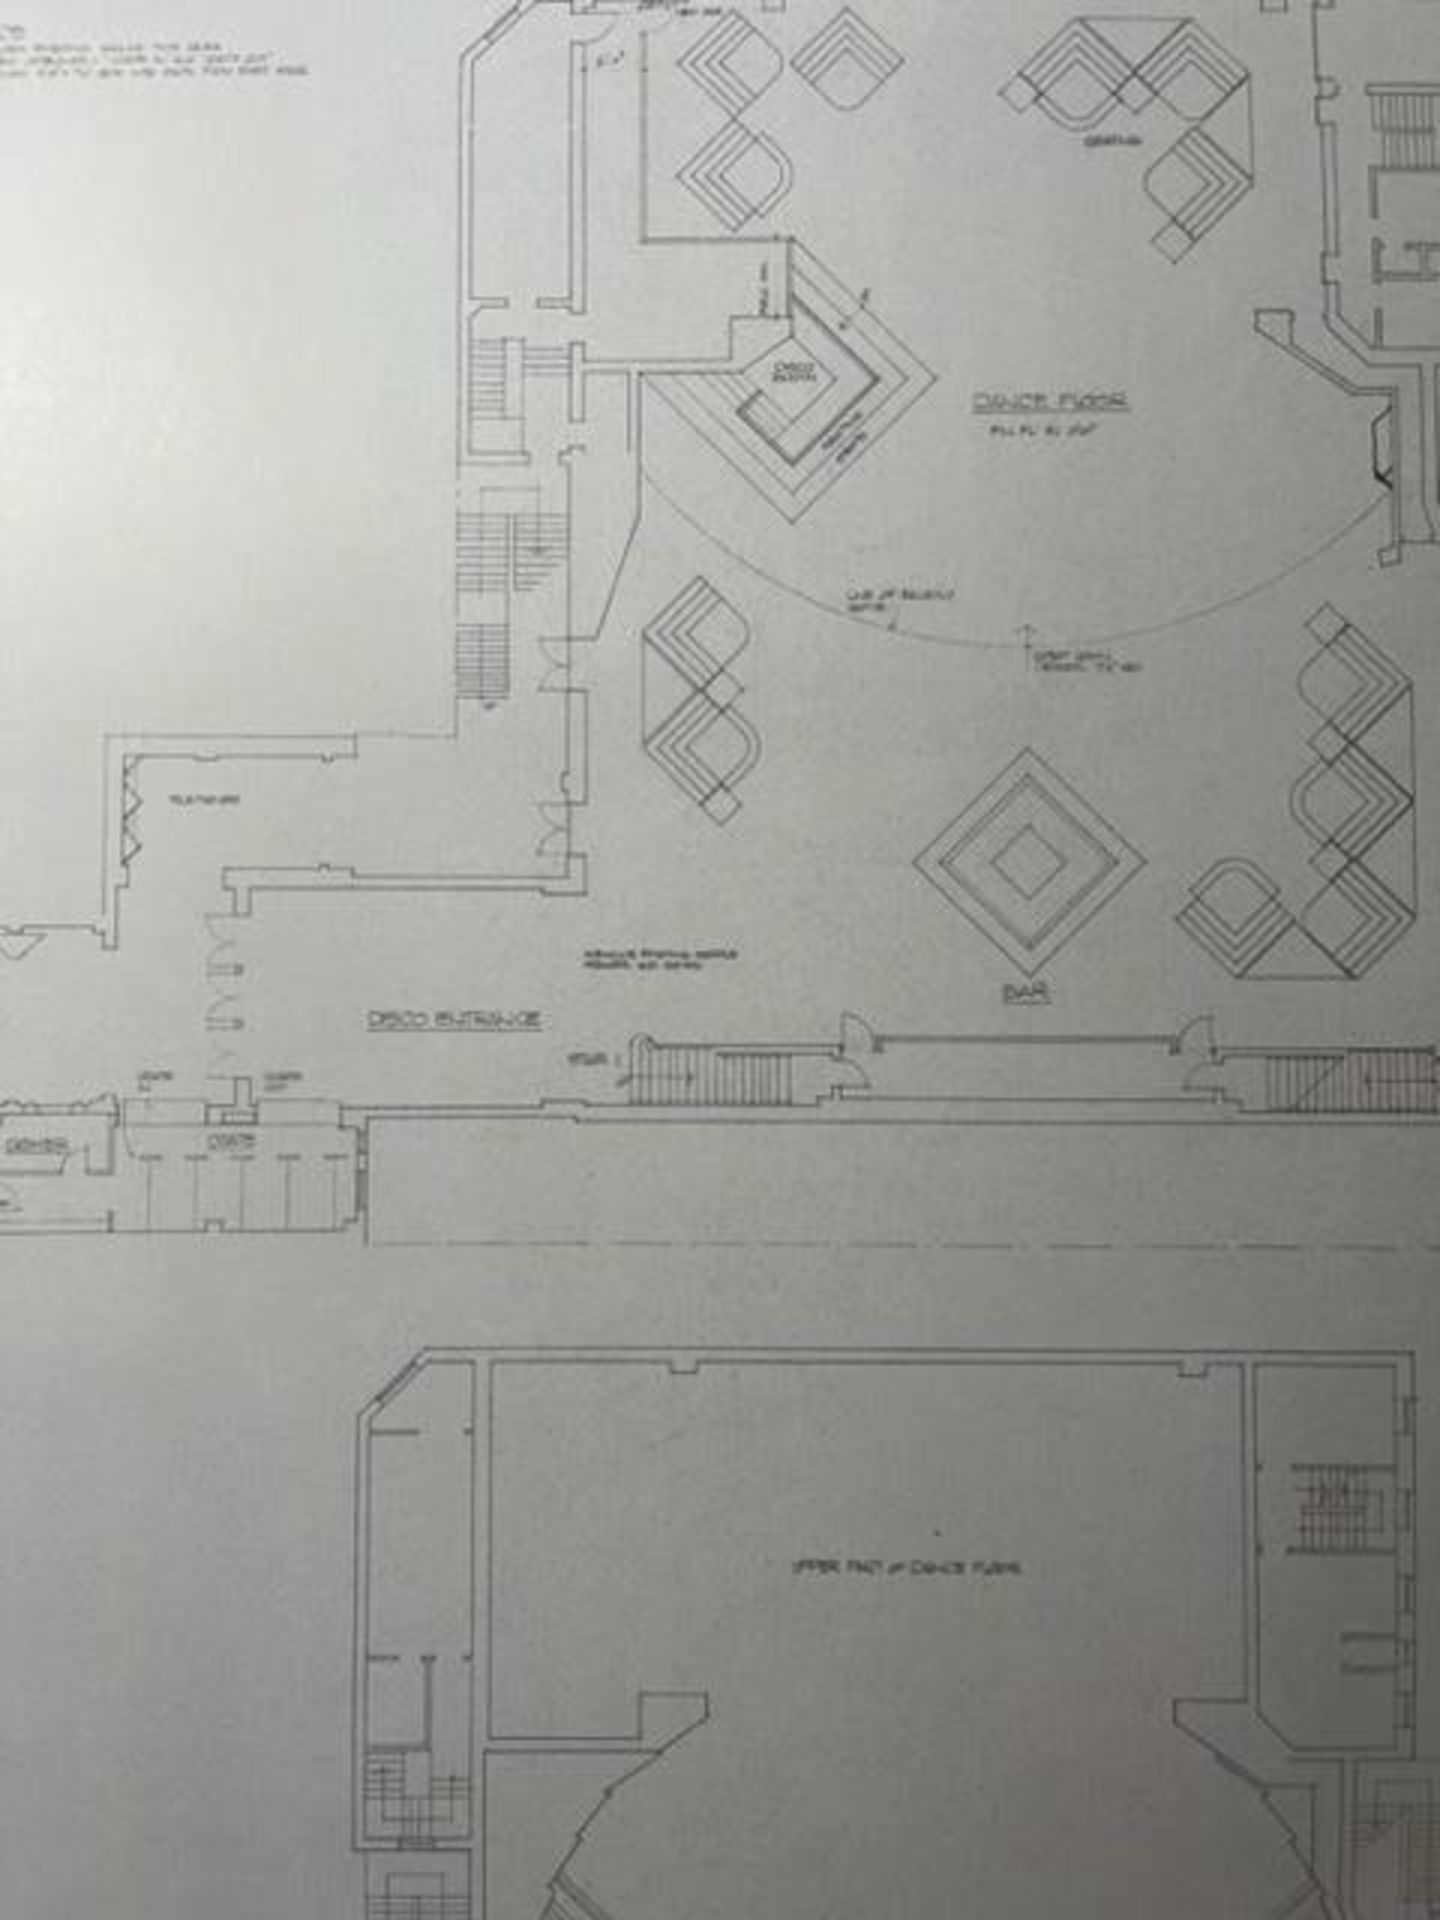 Studio 54 "Floor Plans" Print. - Image 2 of 6